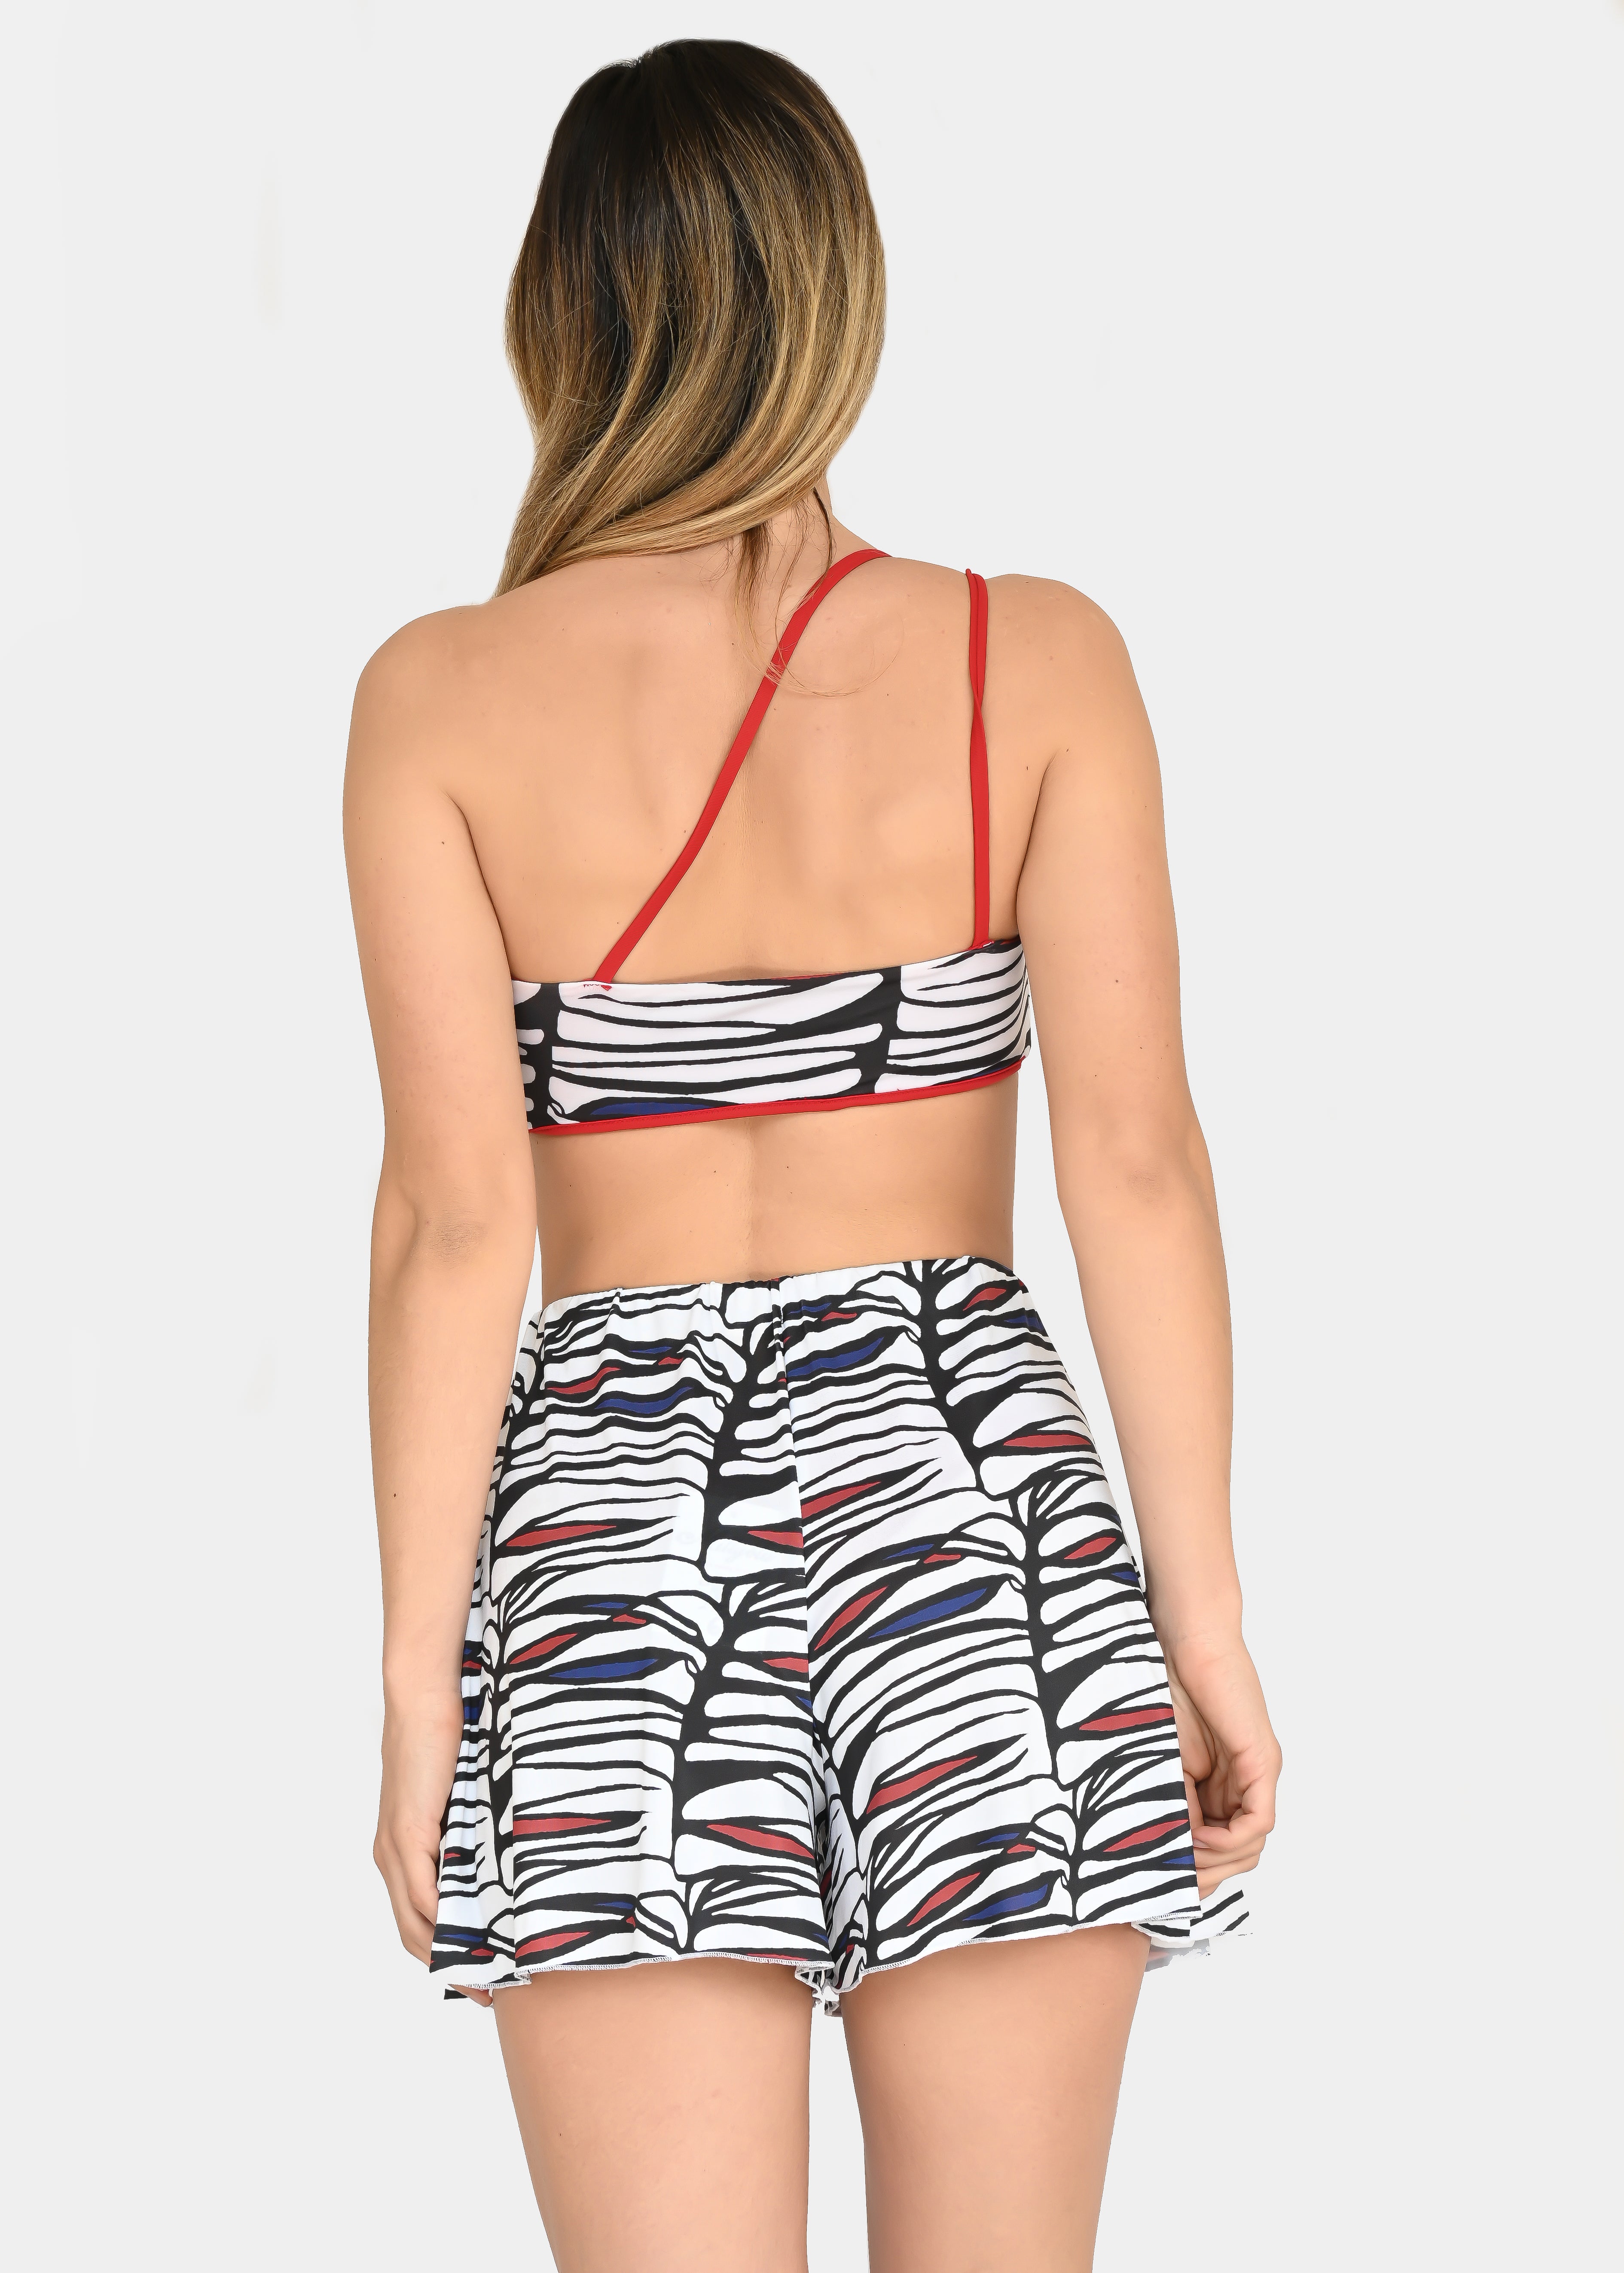 Il pantaloncino in maglina "Zebra Rossa", riporta uno dei tanti dipinti di Millyblu. Confortevole, fresco e morbido. Ha l'elastico in vita con cuciture laterali. È possibile indossarlo sia a vita bassa che a vita alta. Comodo per le lunghe giornate estive anche come copricostume mare o fuori acqua.